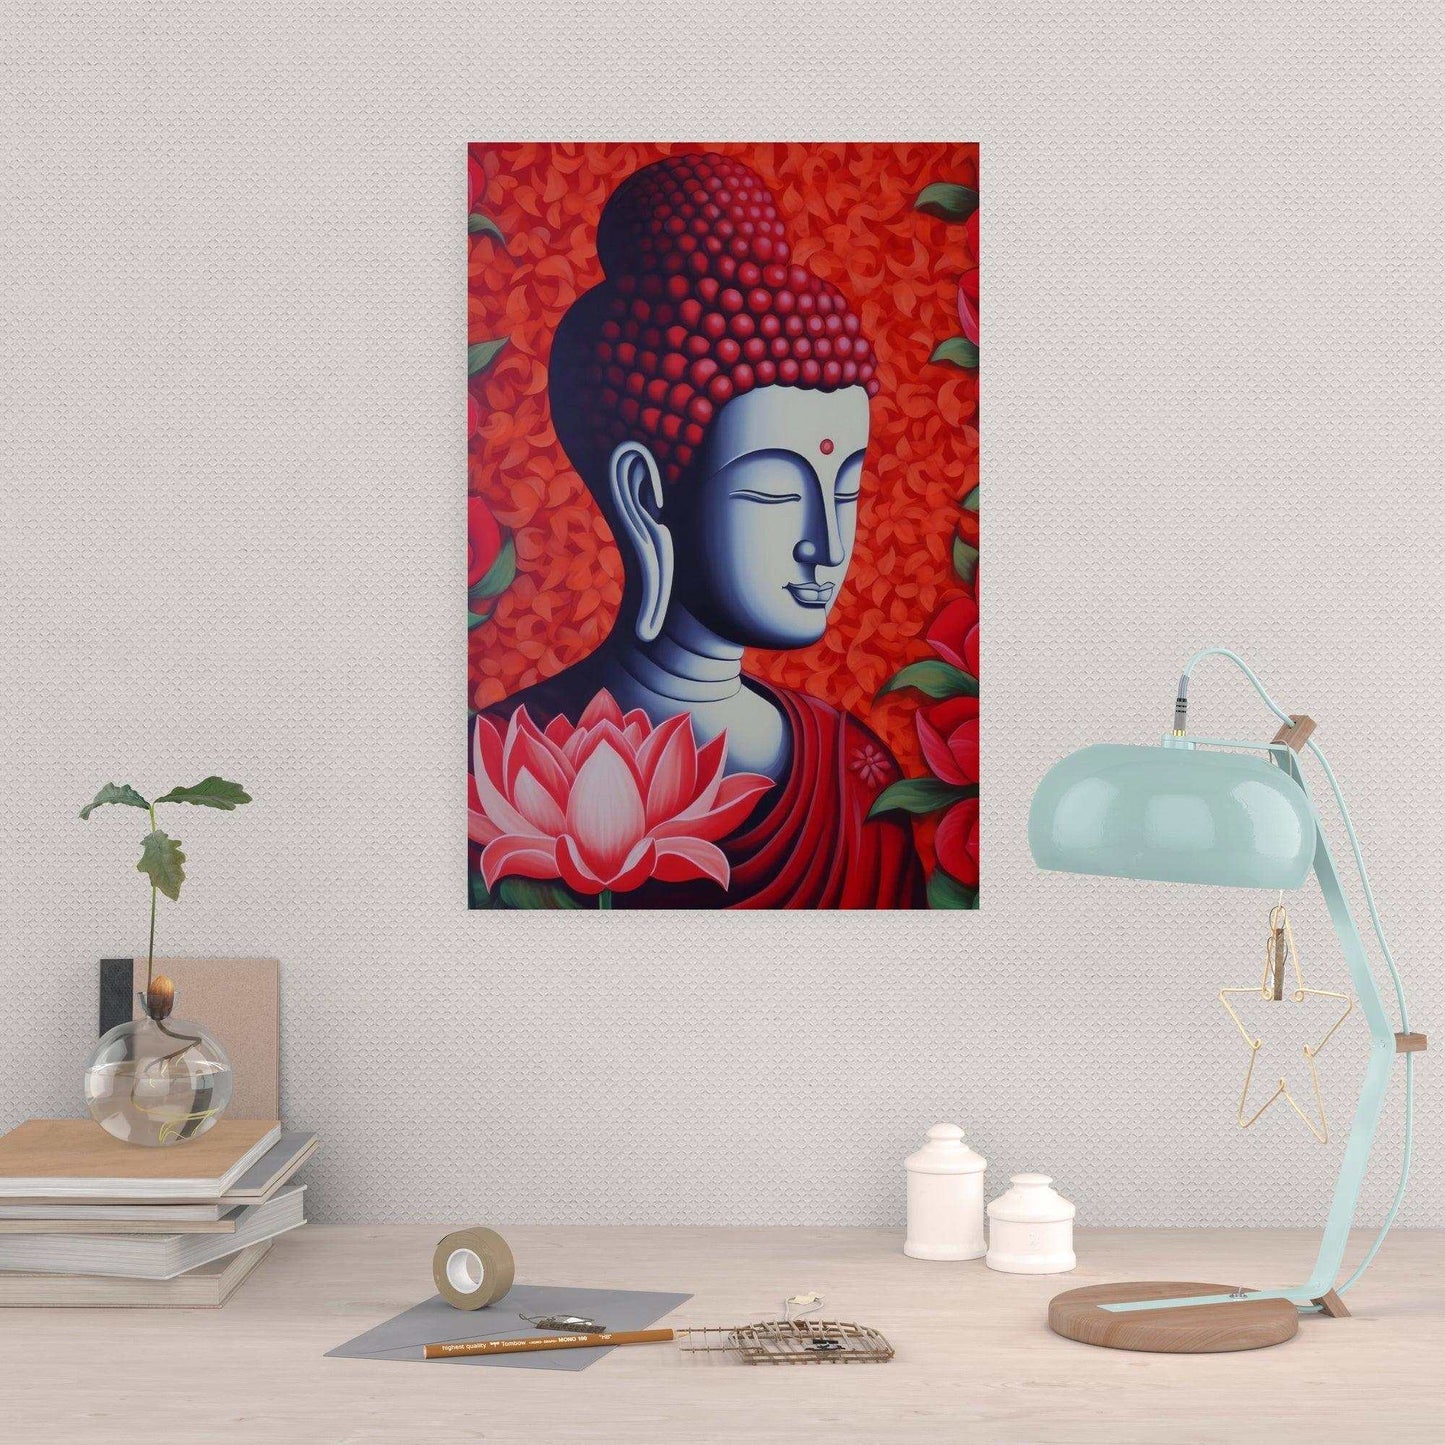 Meditative Bliss - Red Zen Buddha Poster - Zenartbliss- A Brand of Oxygen O2 Technology